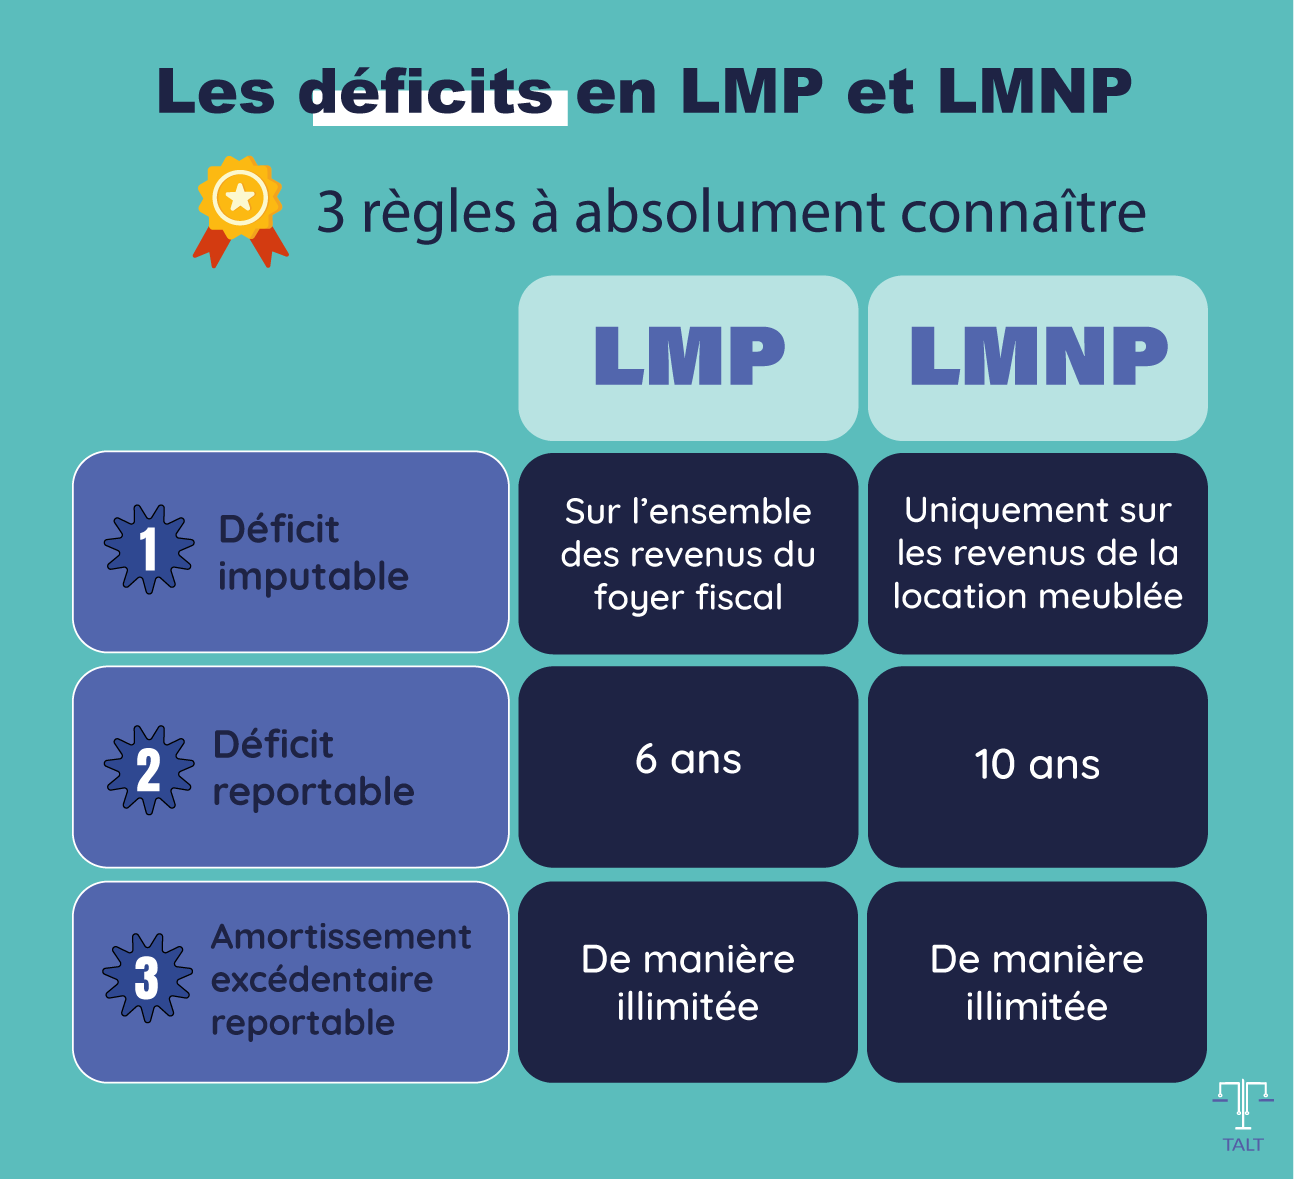 Les 3 règles à connaître en matière de déficits en LMP et LMNP : l'assiette sur laquelle peut être imputée le déficit reportable en LMNP et LMP, la durée pendant laquelle ce déficit peut être reporté et la règle de l'amortissement excédentaire